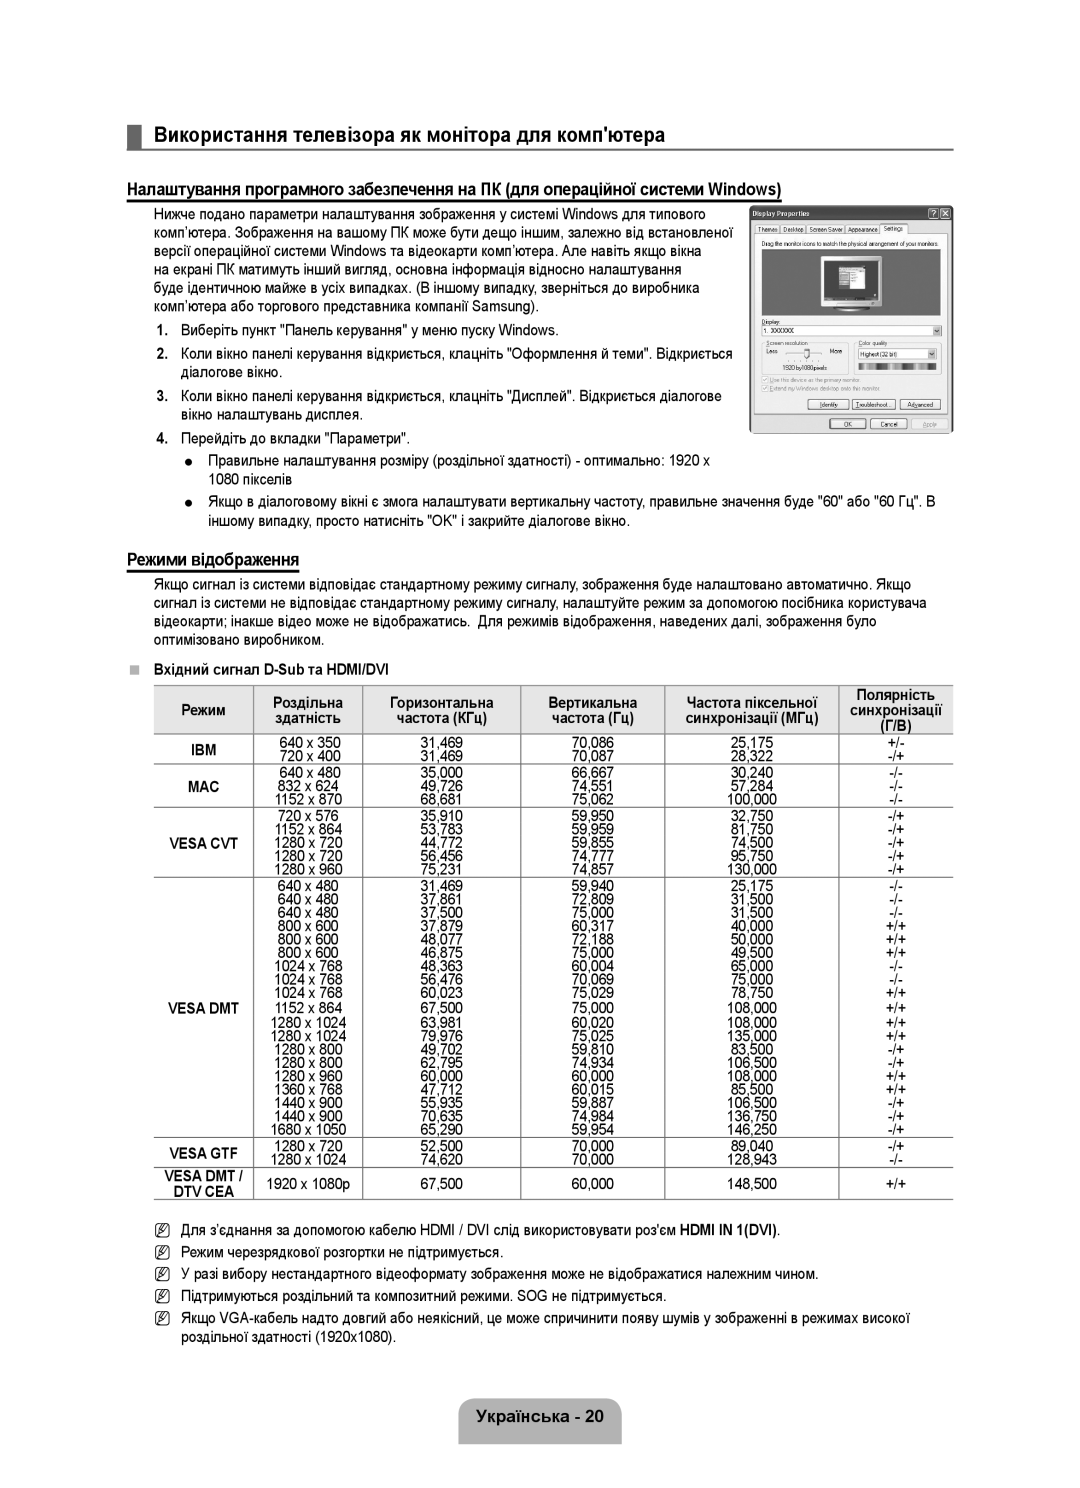 Samsung UE46B6000VWXUA, UE40B6000VWXXN Використання телевізора як монітора для компютера, Режими відображення, Українська 